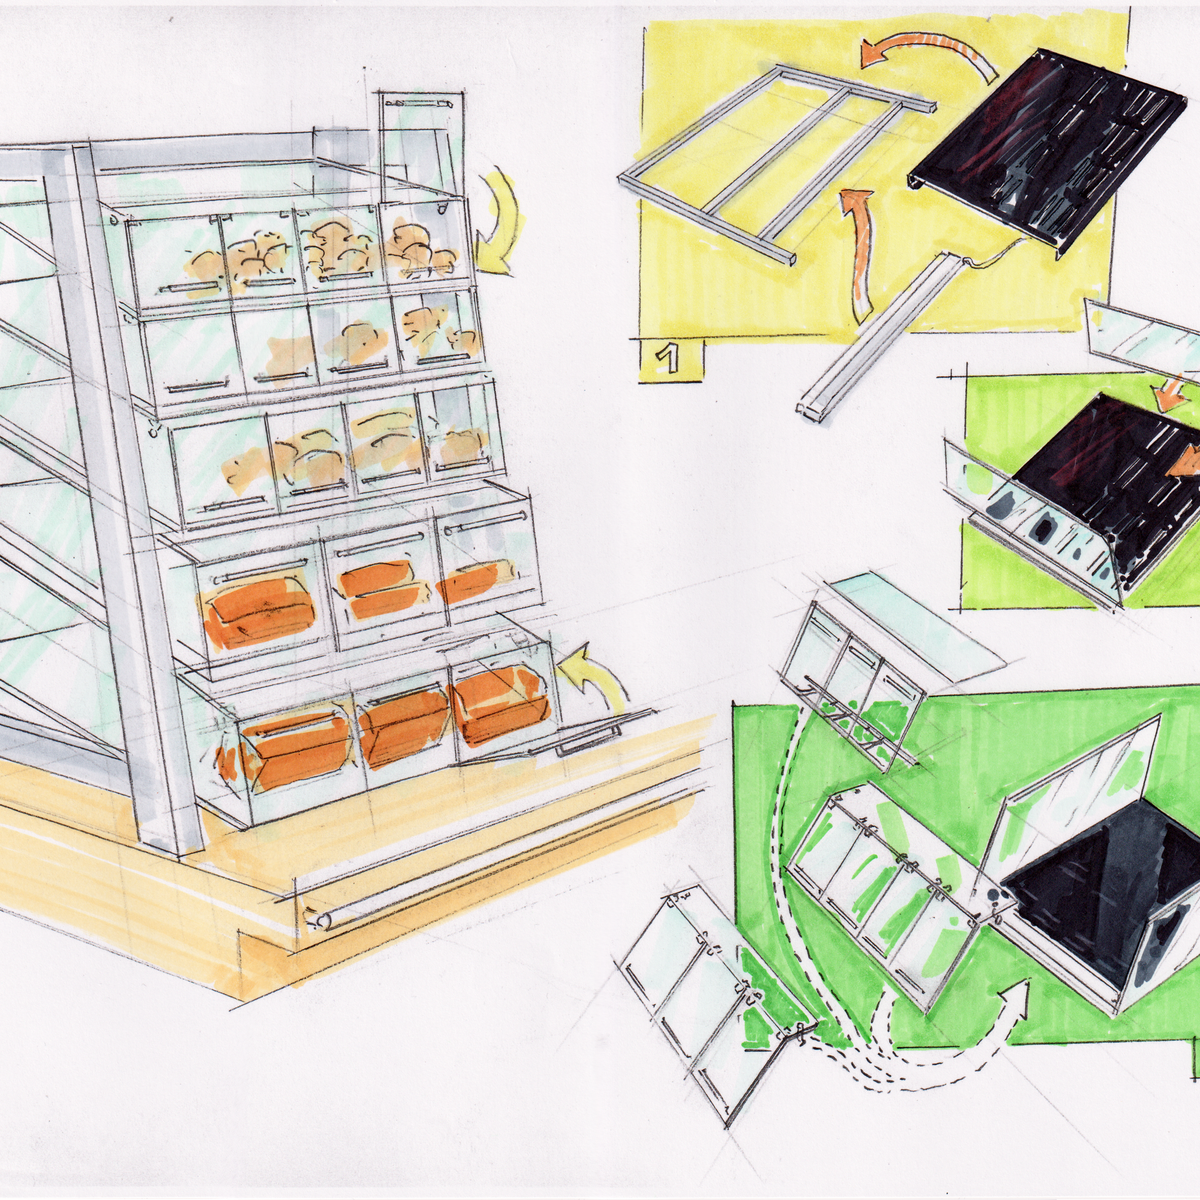 Selbstgezeichnete Montageanleitung mit Schritten zur Zusammenstellung, präsentiert in einer Bäckervitrine im Selbstbedienungsbereich.